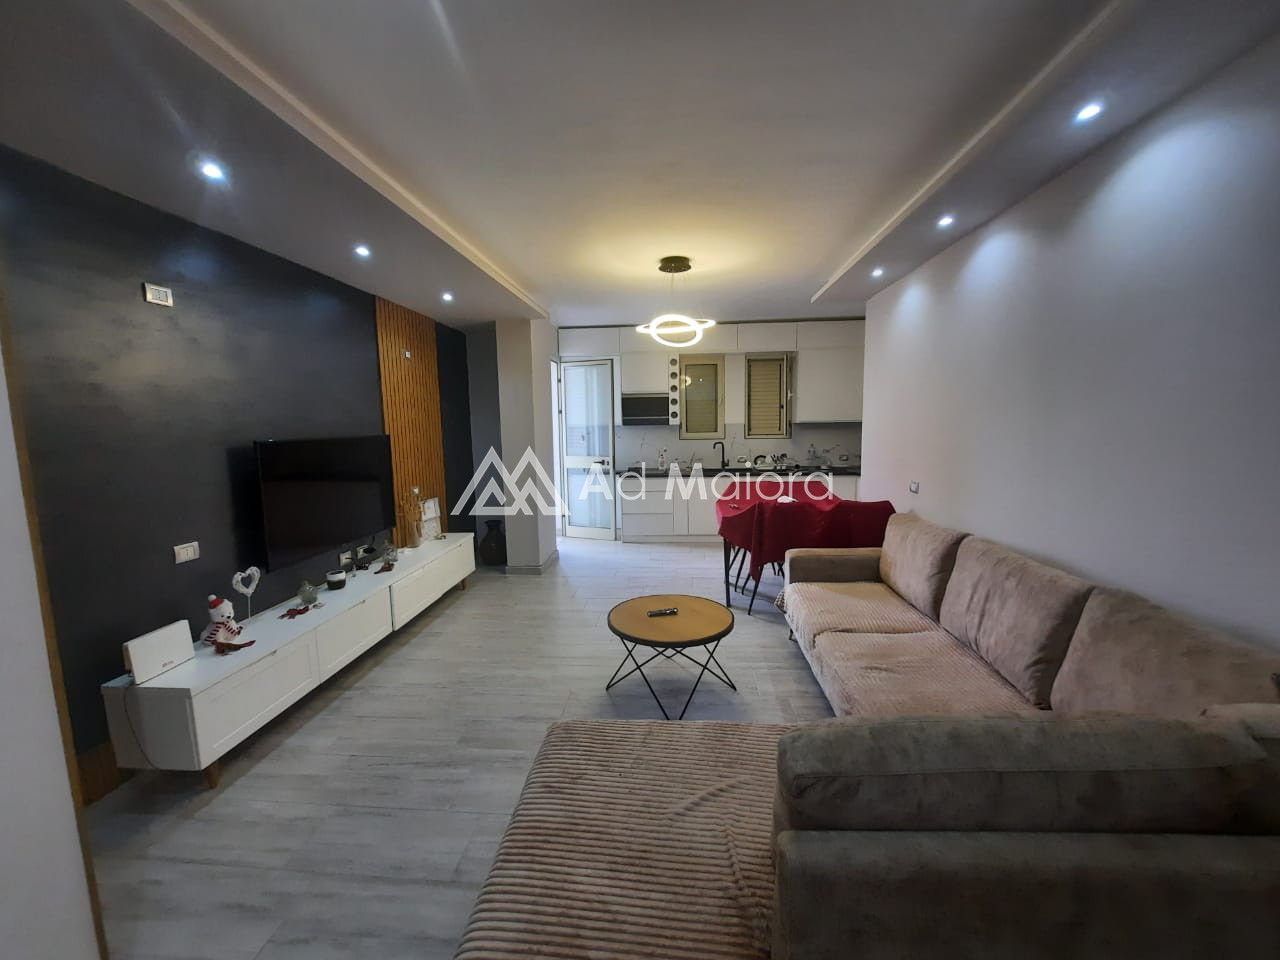 Foto e Apartment në shitje LAGJA 8, Durrës